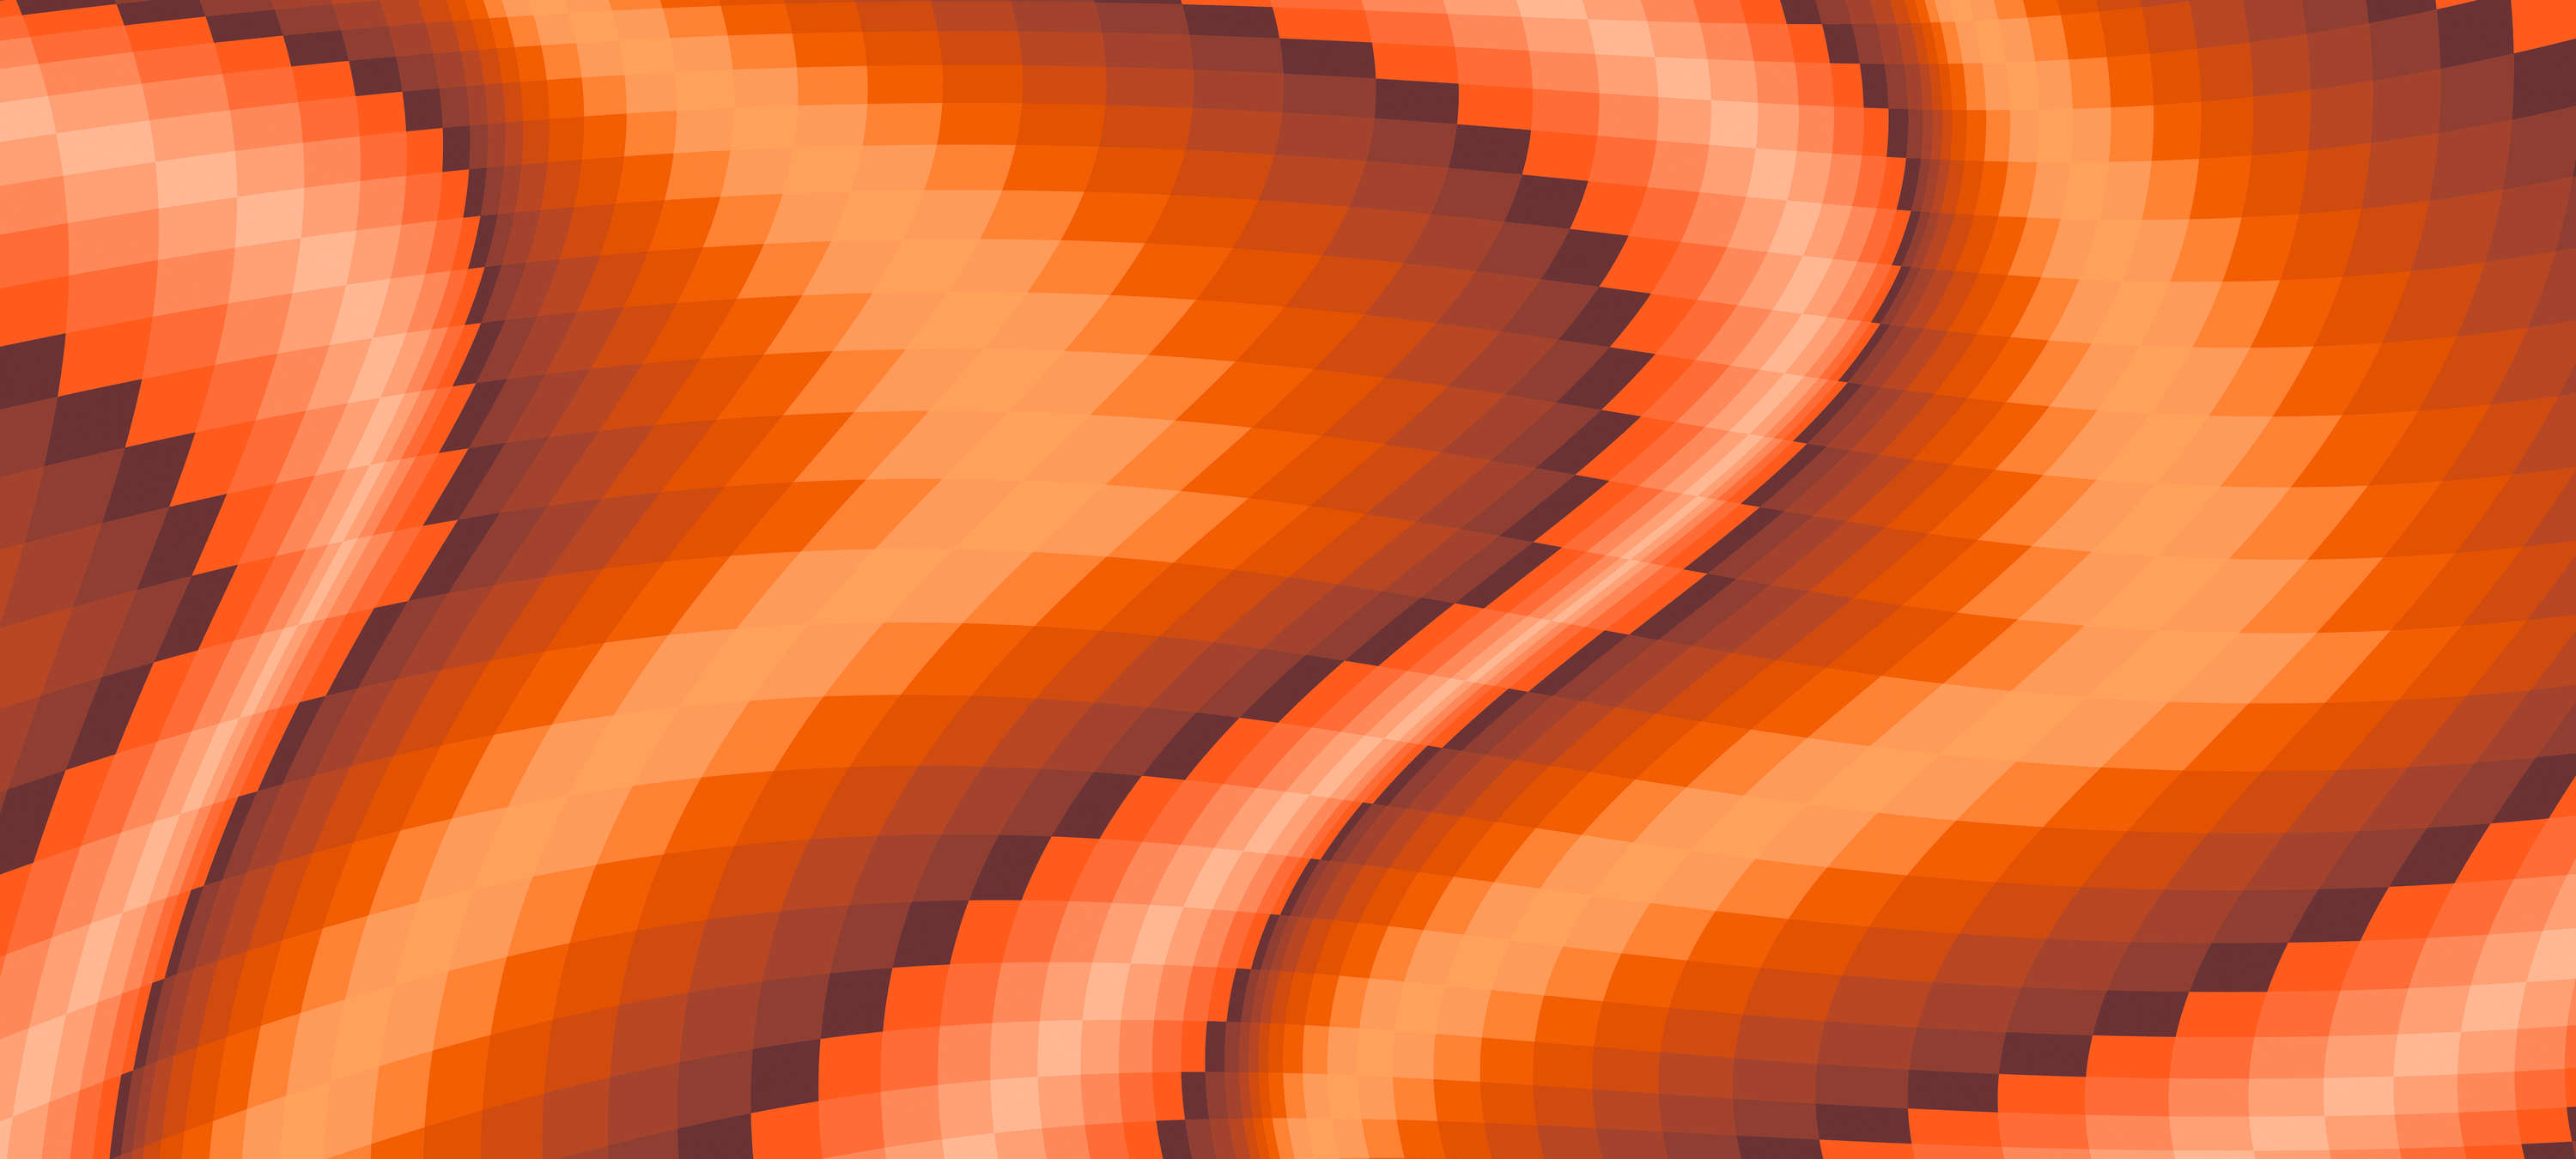             Modern Behang Grafisch Ontwerp & Perspectief Effect - Oranje, Rood
        